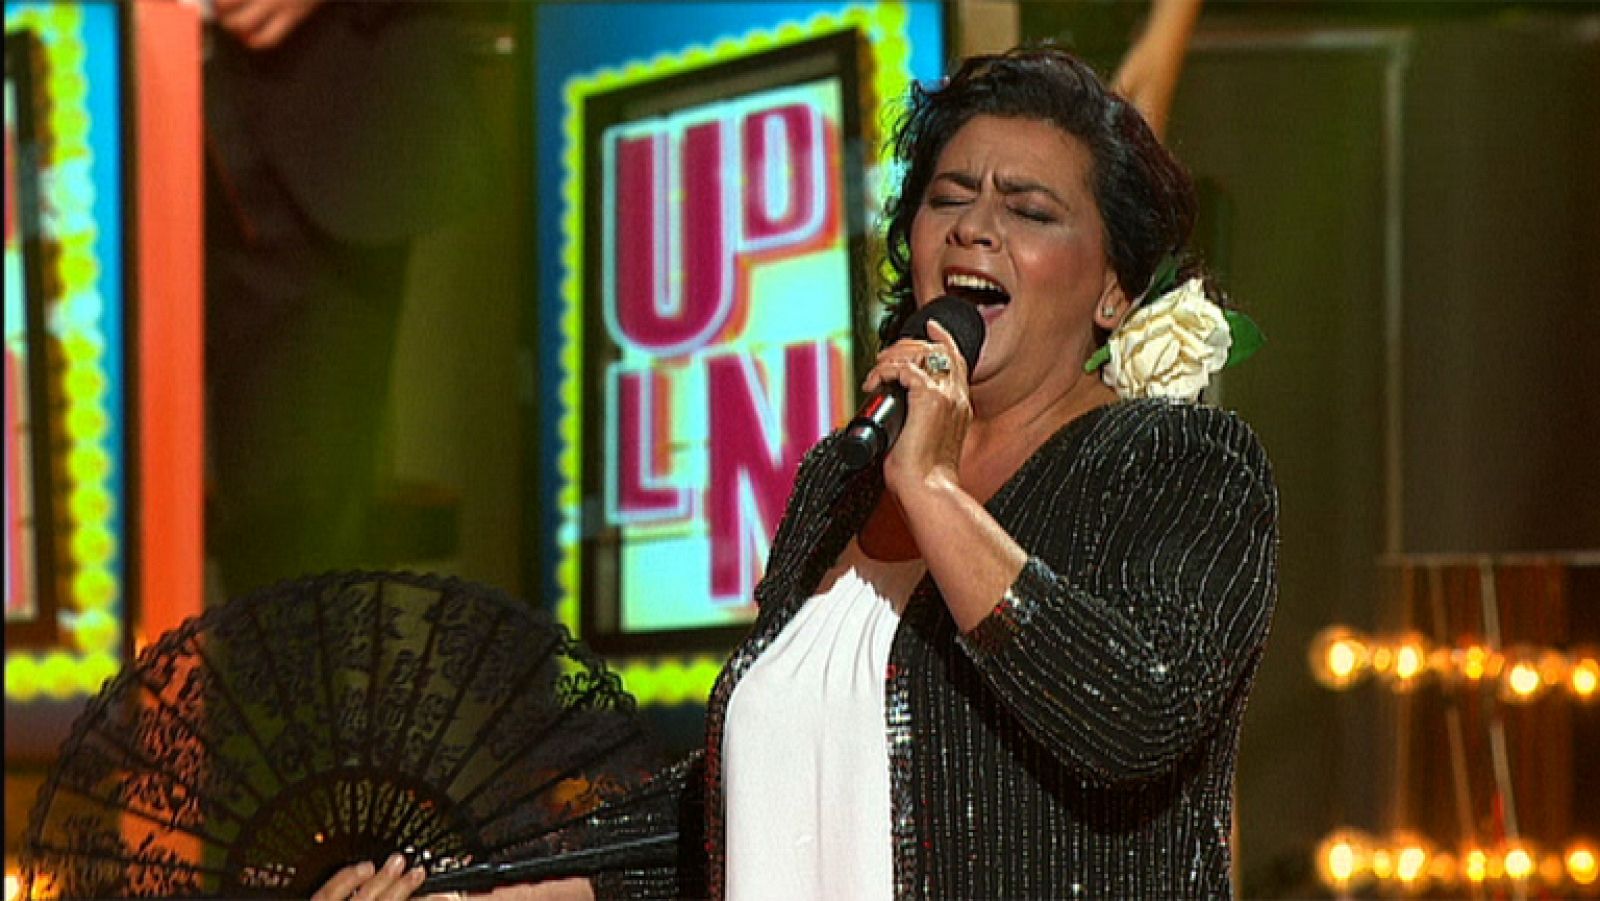 Uno de Los nuestros - María del Monte canta "Y viva España" 